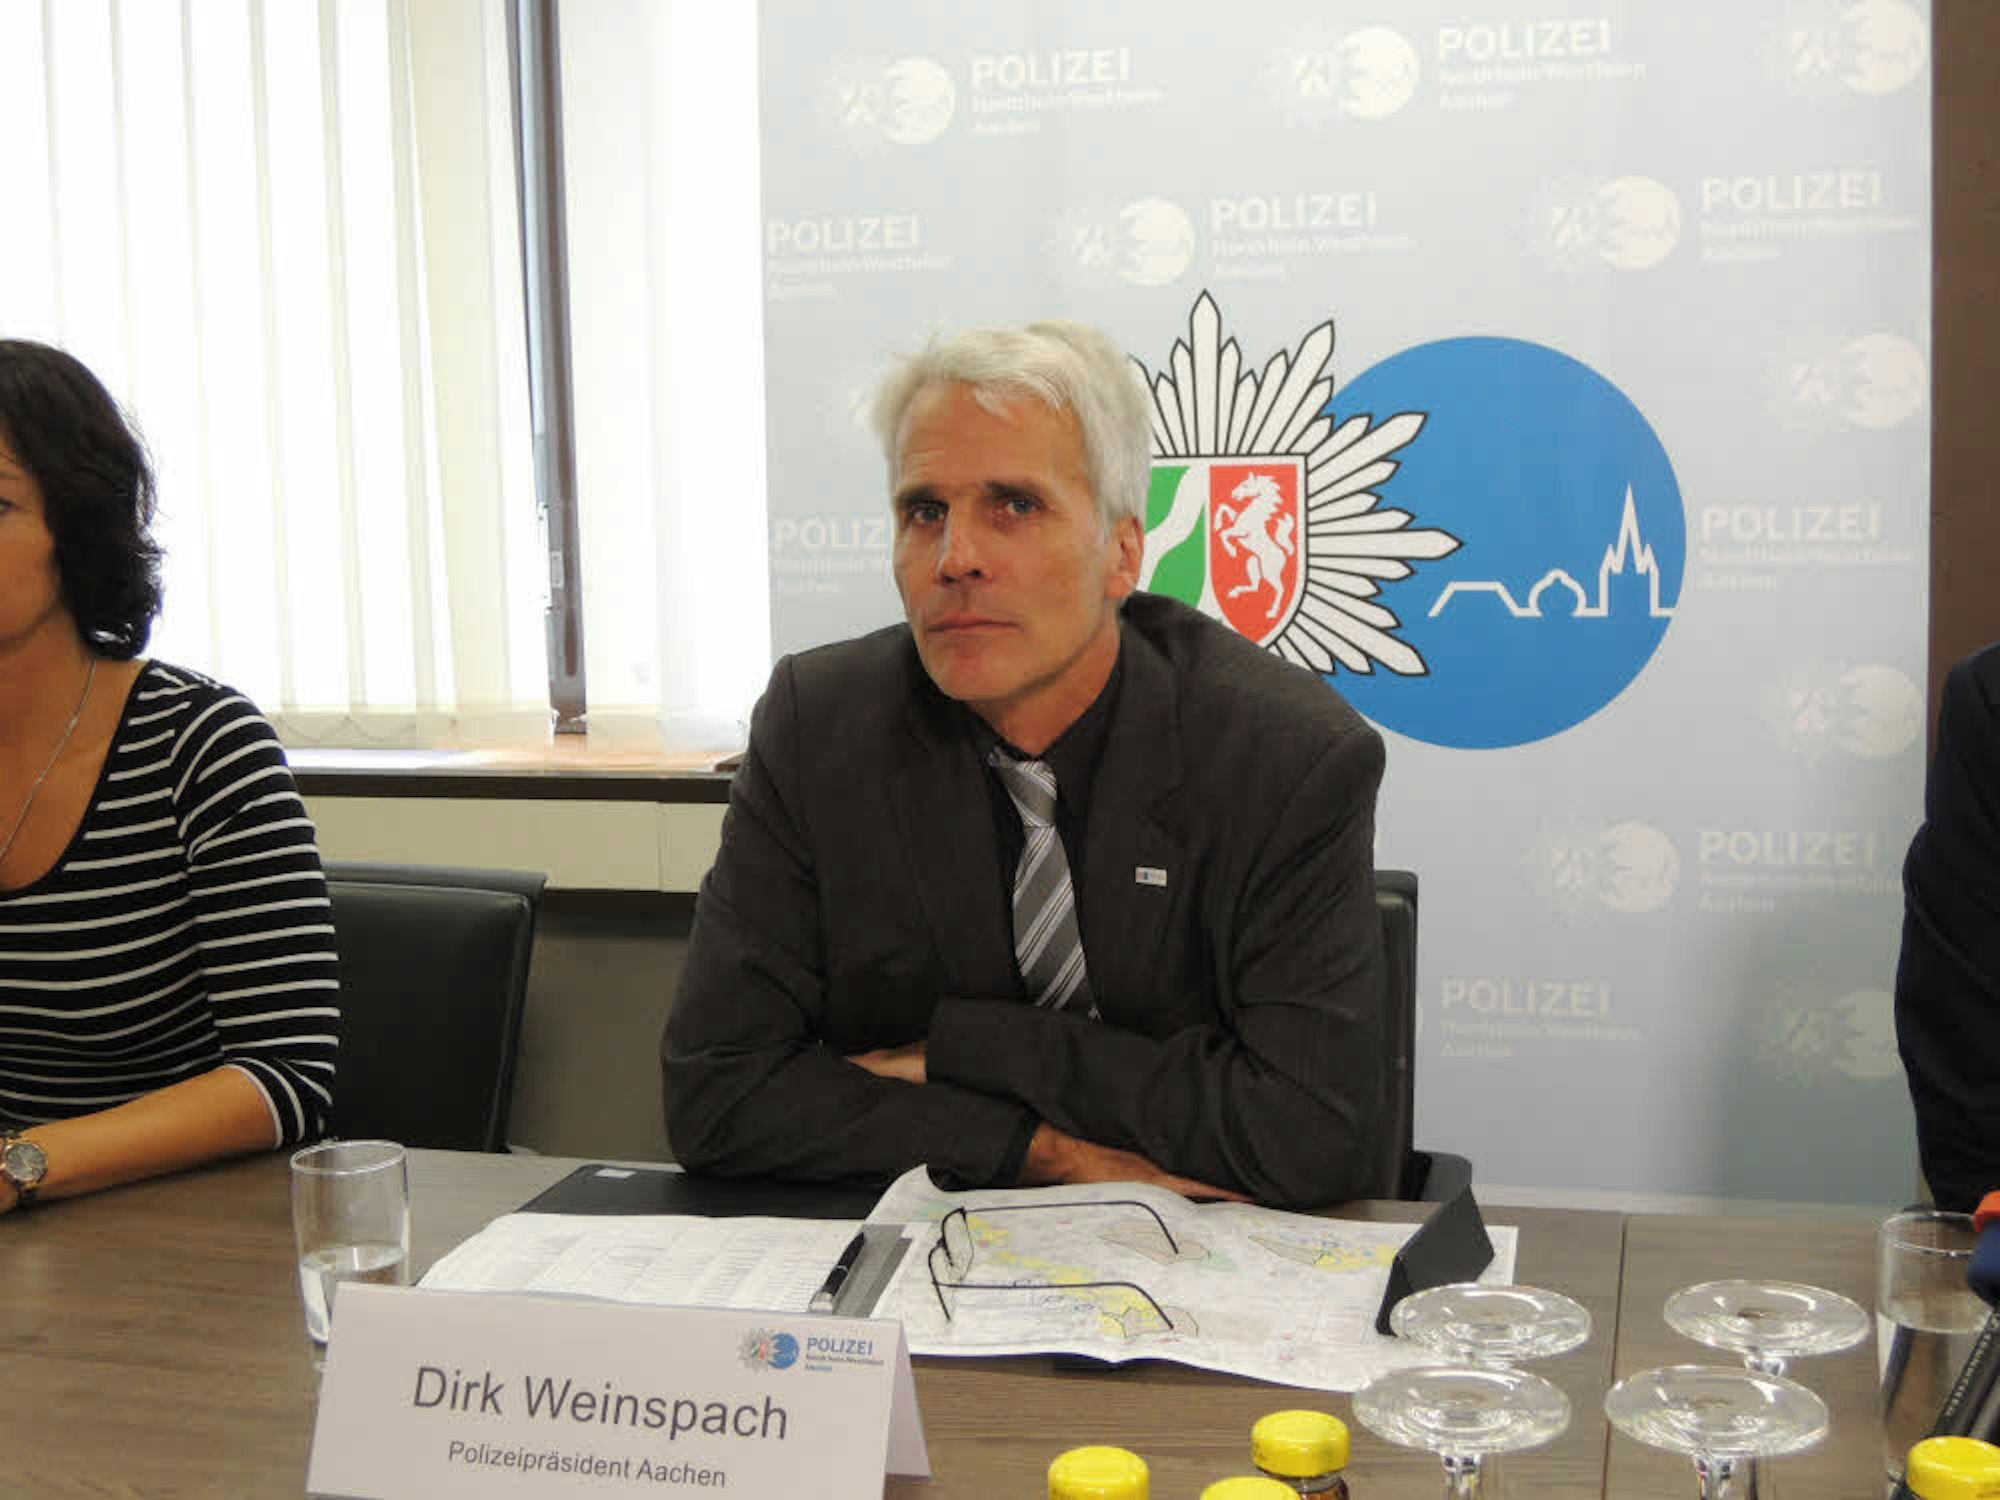 Dirk Weinspach